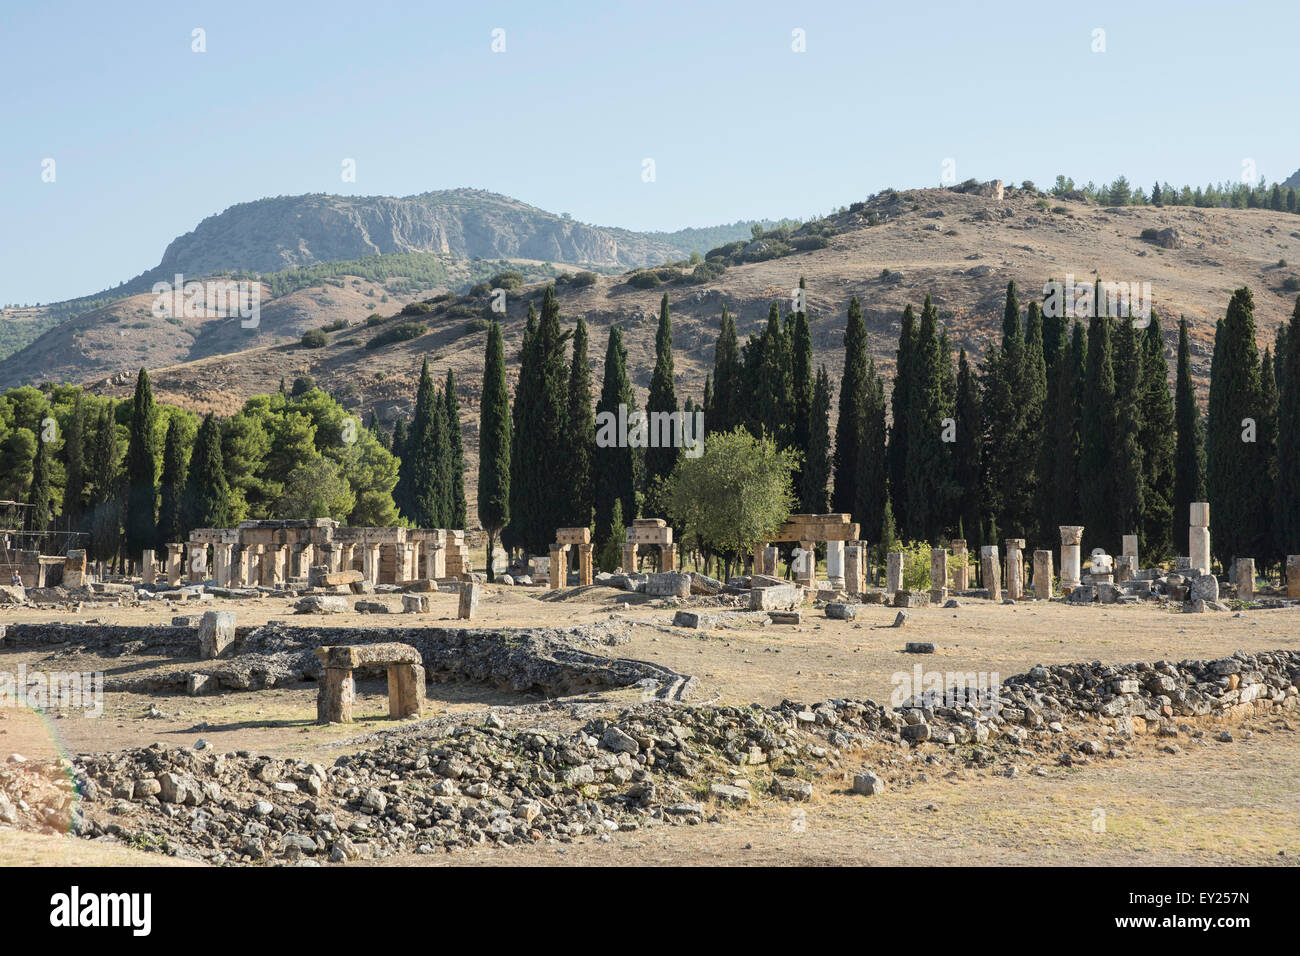 Blick auf Säulen und Pfeiler in Hierapolis, Kappadokien, Anatolien, Türkei Stockfoto